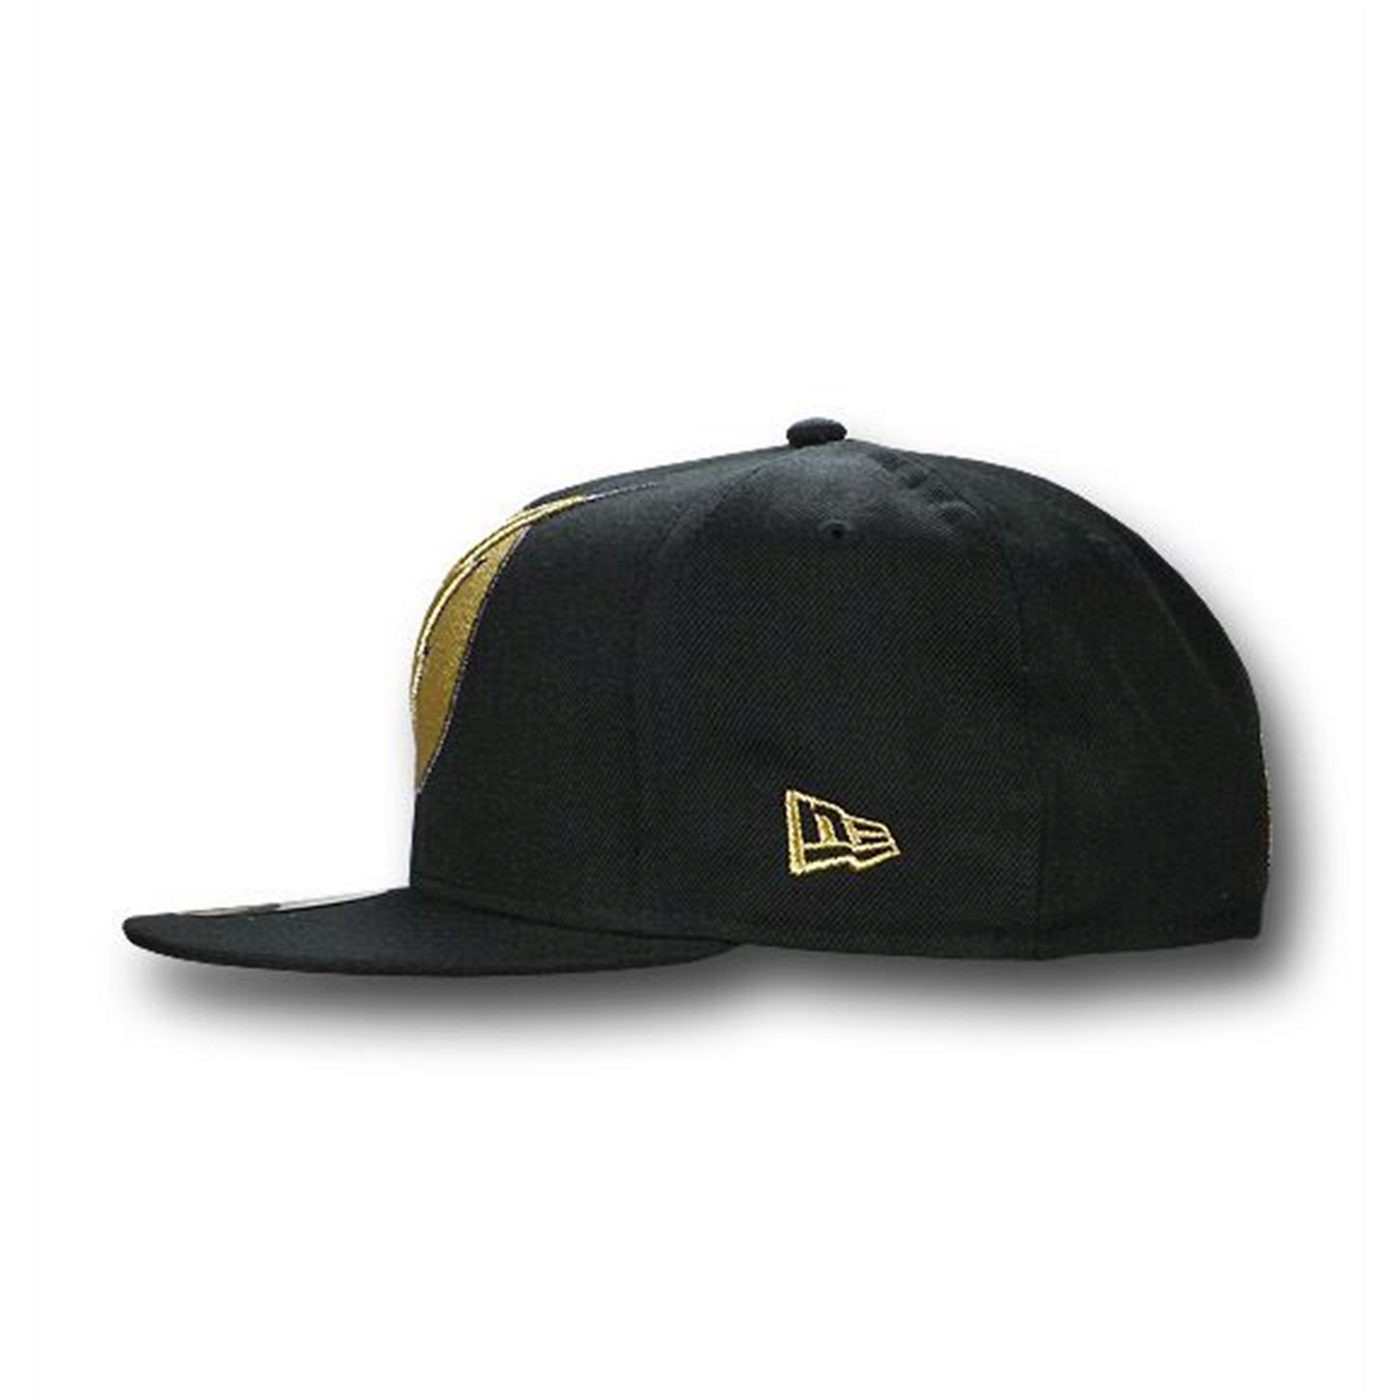 Flash 59Fifty Black Gold Flat Bill Hat